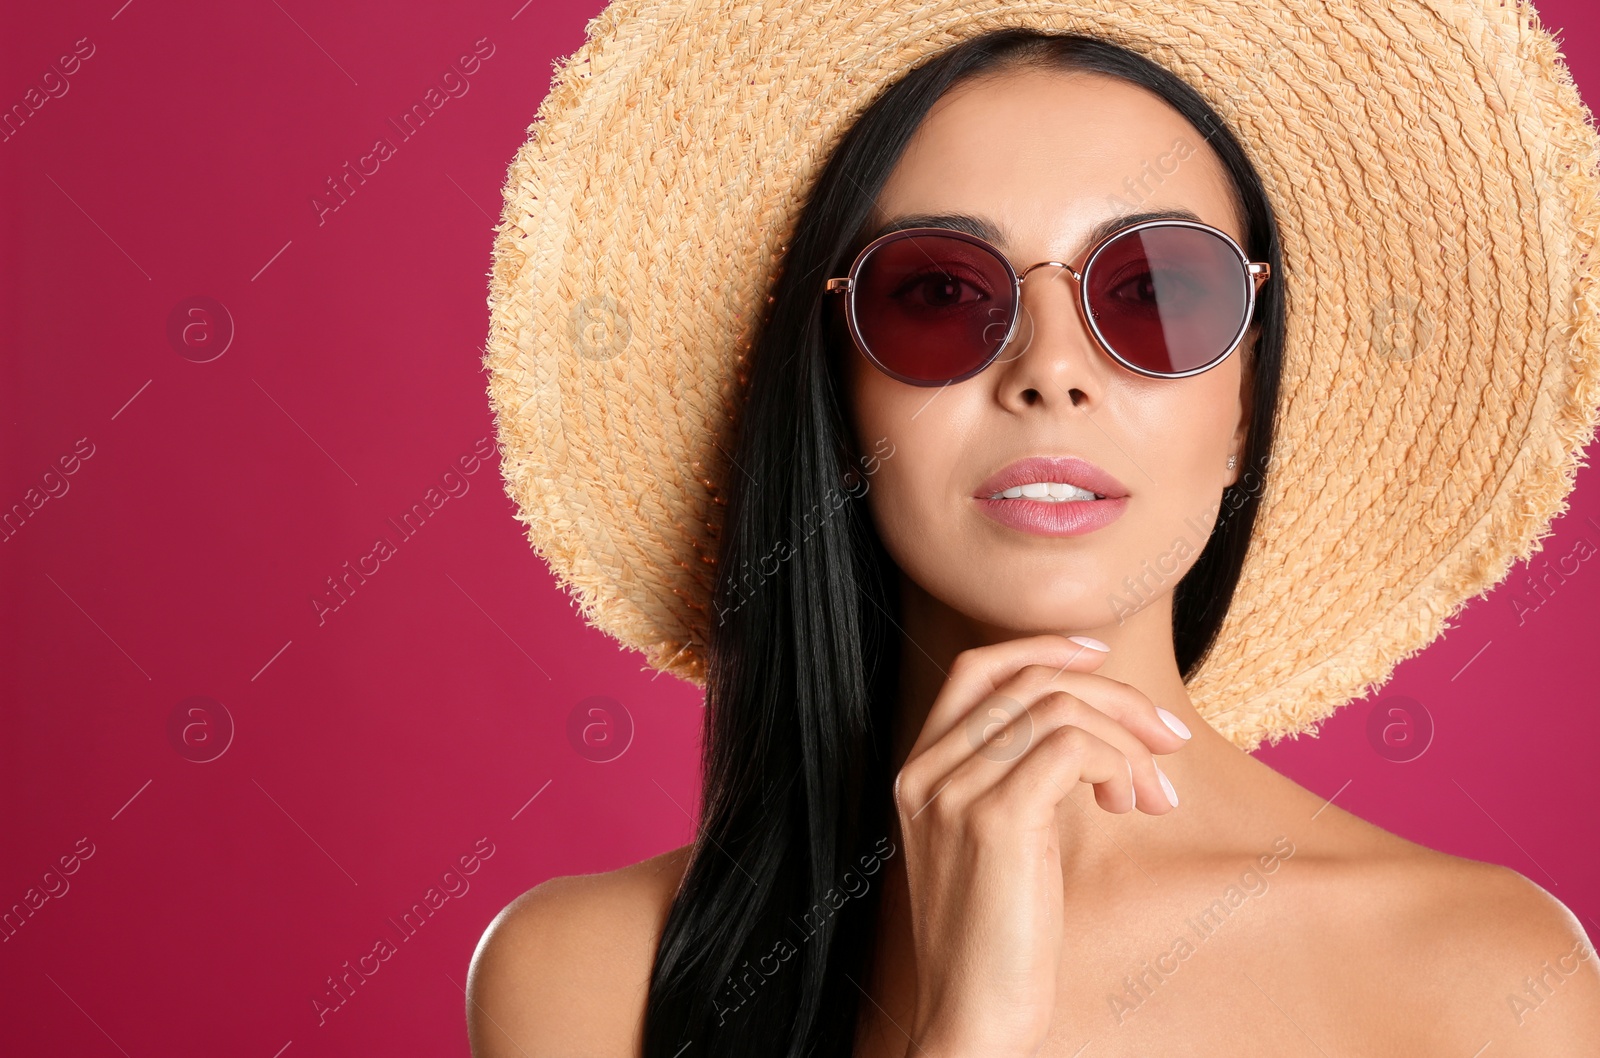 Photo of Beautiful woman wearing sunglasses on pink background